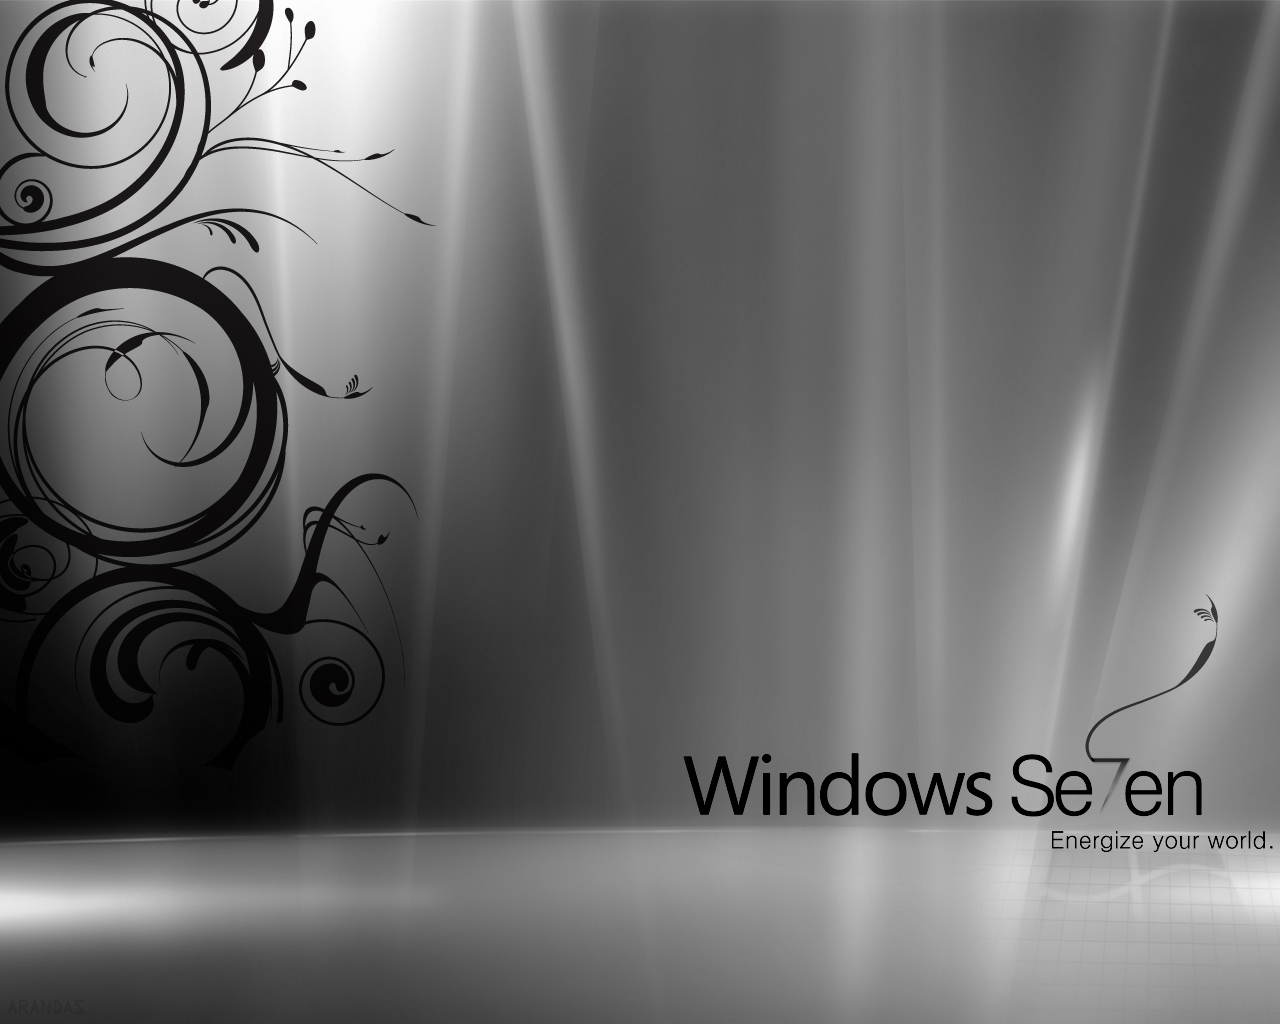 خلفيات ويندوز سفن لسطح المكتب Windows+7+ultimate+collection+of+wallpapers+%252822%2529